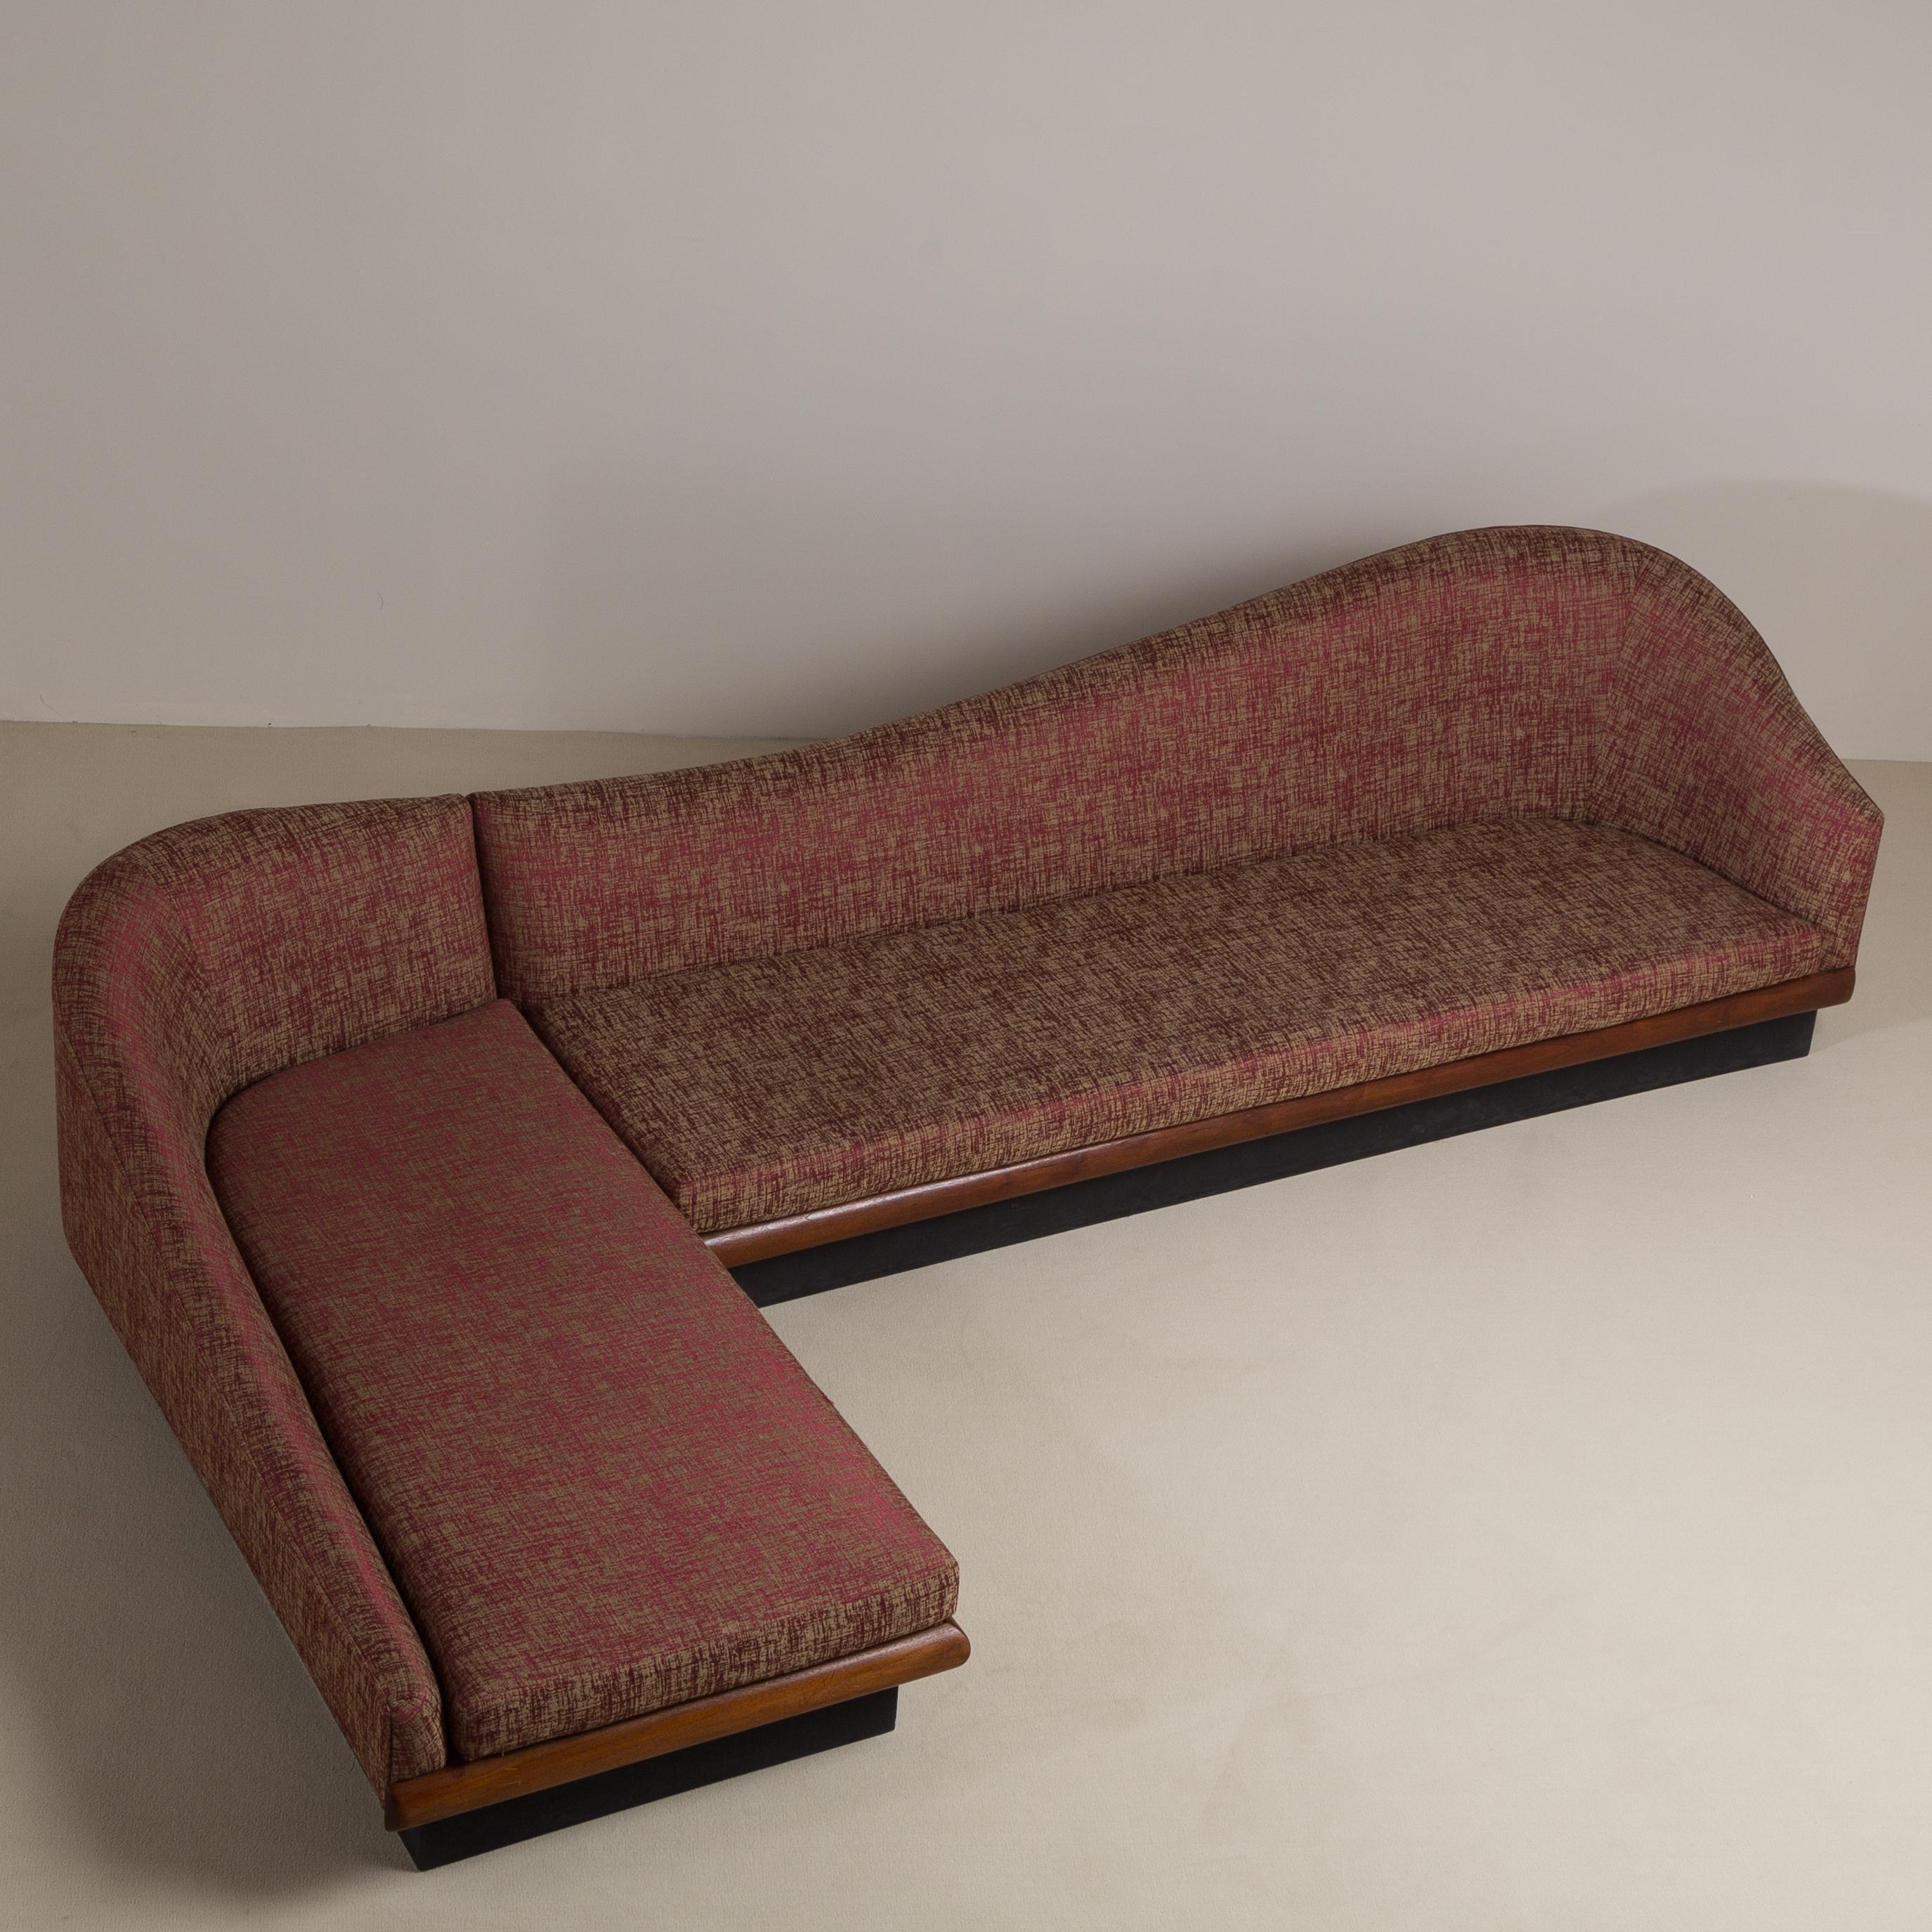 Gebogenes zweiteiliges Wolken-Sofa von Adrian Pearsall für Craft Associates, USA, 1950er Jahre (amerikanisch)